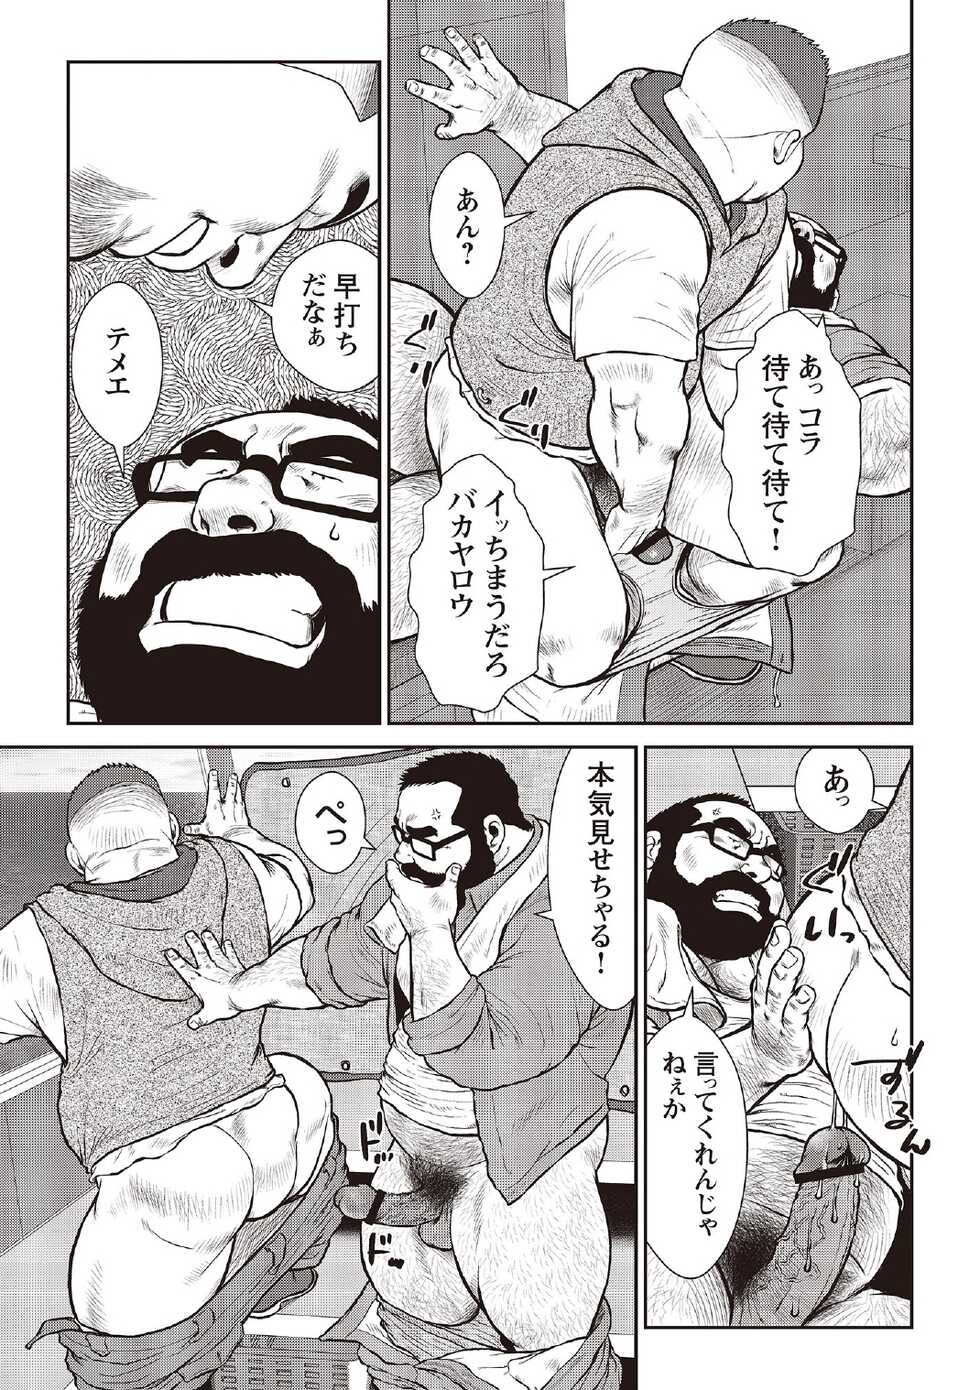 [Ebisubashi Seizou] Ebisubashi Seizou Tanpen Manga Shuu 2 Fuuun! Danshi Ryou [Bunsatsuban] PART 3 Bousou Hantou Taifuu Zensen Ch. 3 ~ Ch. 5 [Digital] - Page 7